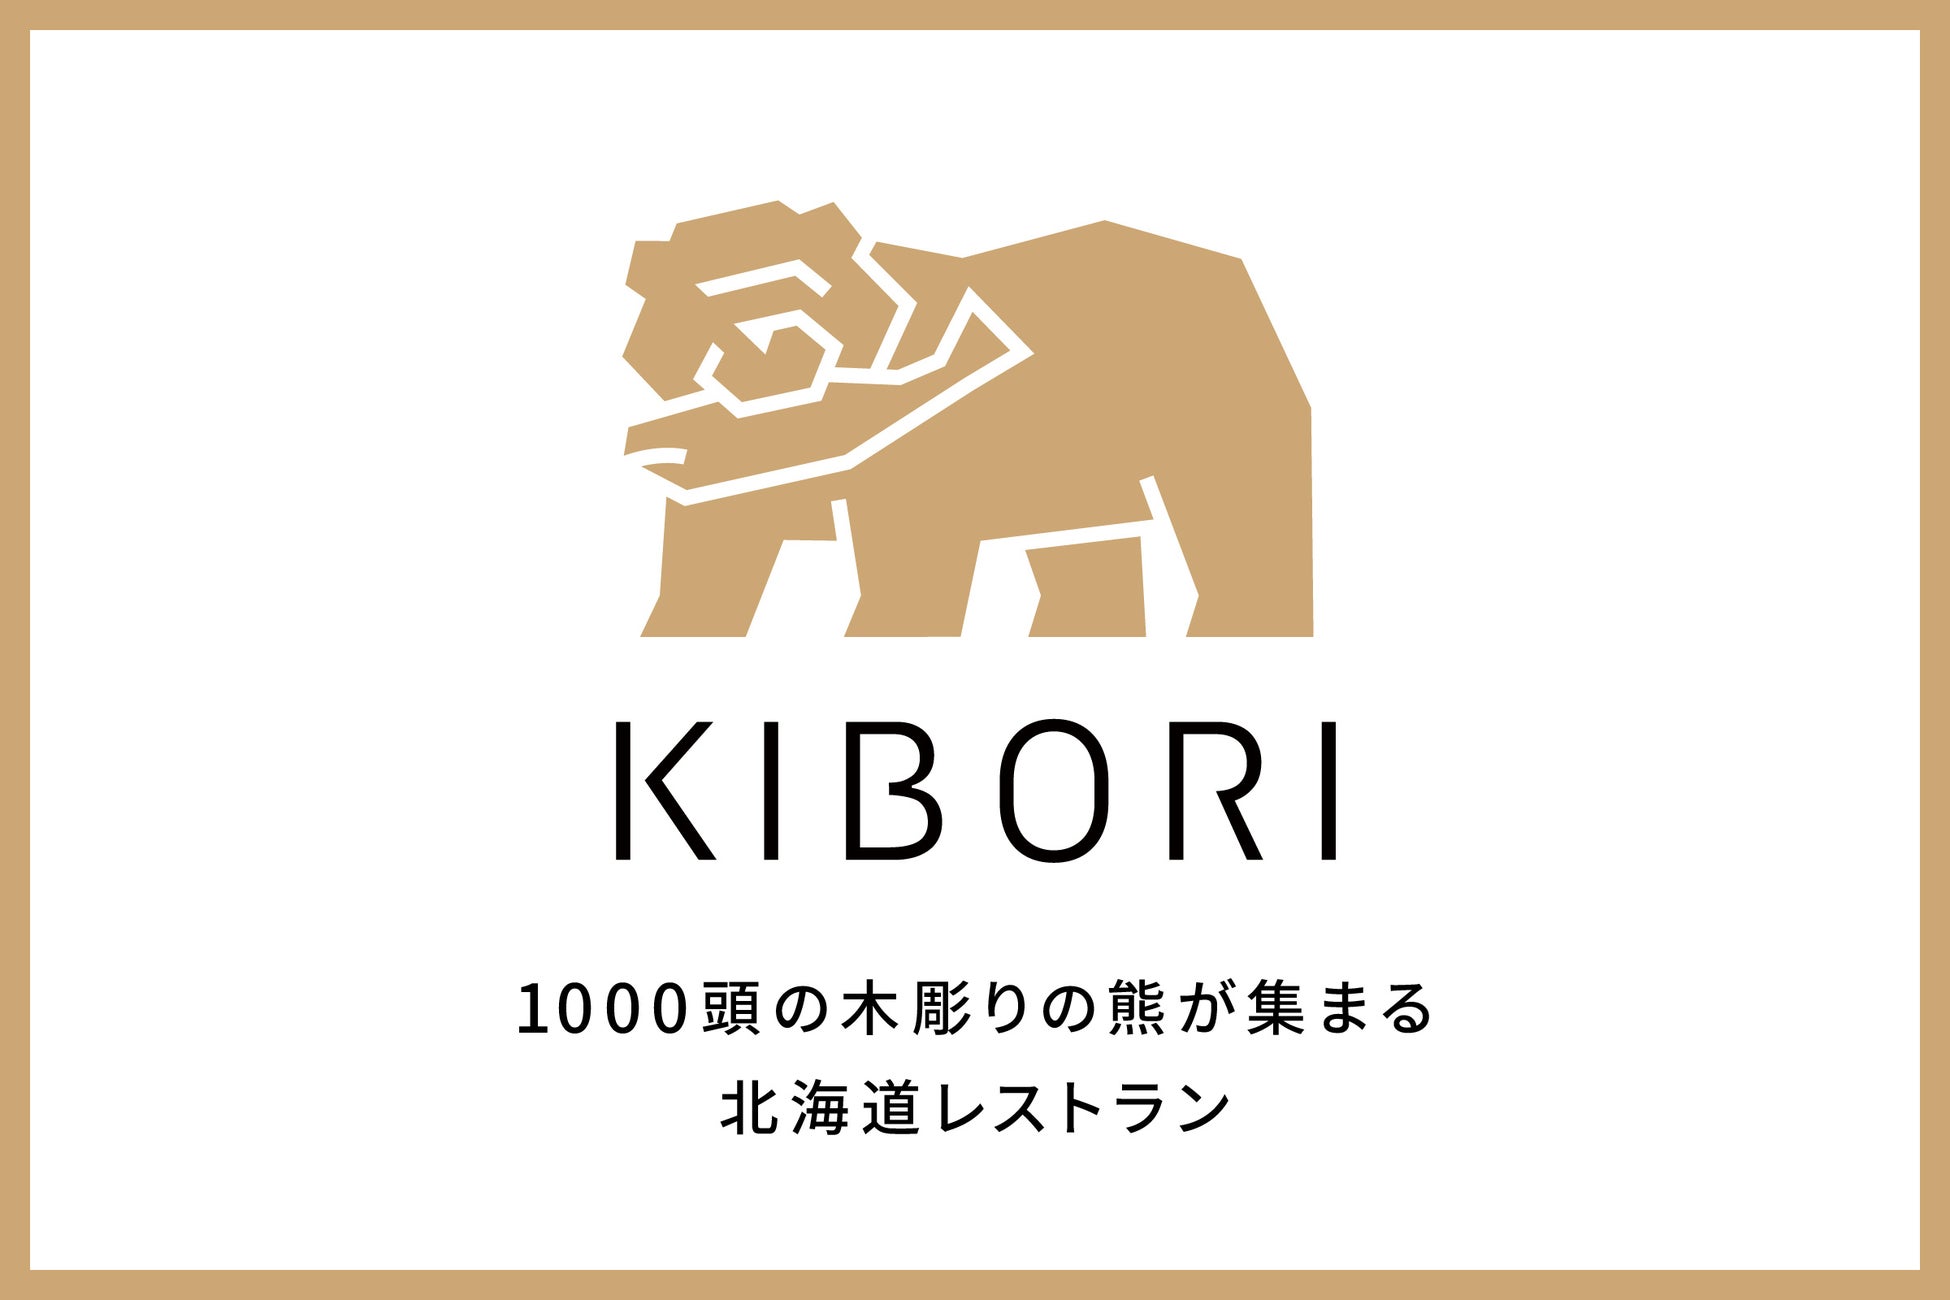 1000頭の「木彫りの熊」が集まる北海道レストラン「KIBORI（キボリ）」2022年11月下旬 新宿にオープン！ 食のエンターテイメントを国内外へ発信する新業態のサブ画像2_2022年11月下旬 新宿にオープン！